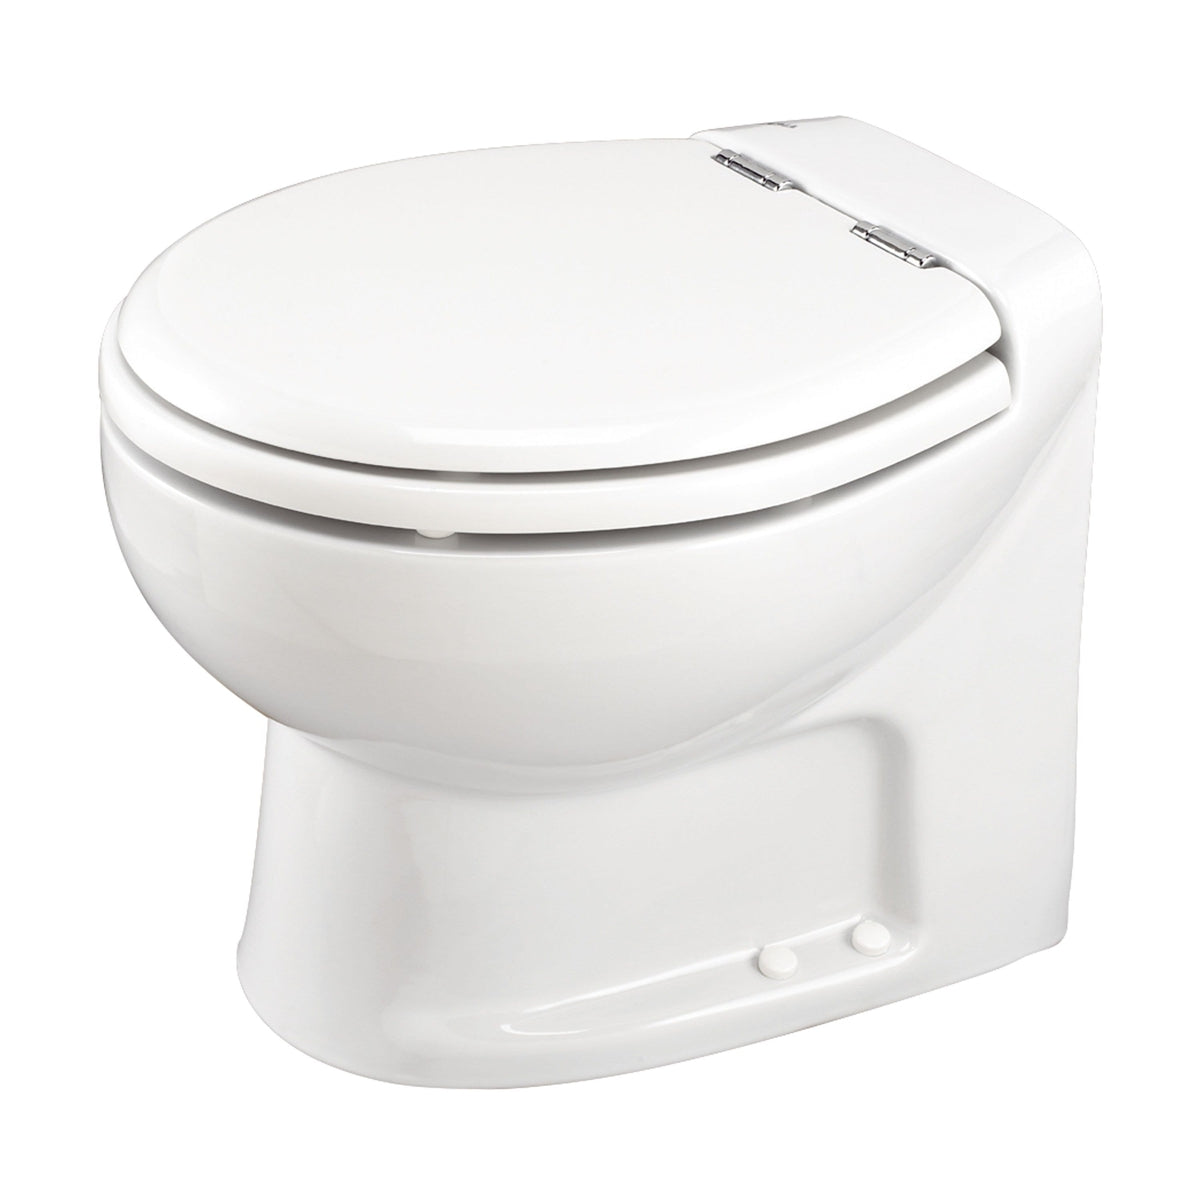 Thetford Not Qualified for Free Shipping Thetford Tecma Silence Plus 2 Mode 12v RV Toilet White/Chrome #38355